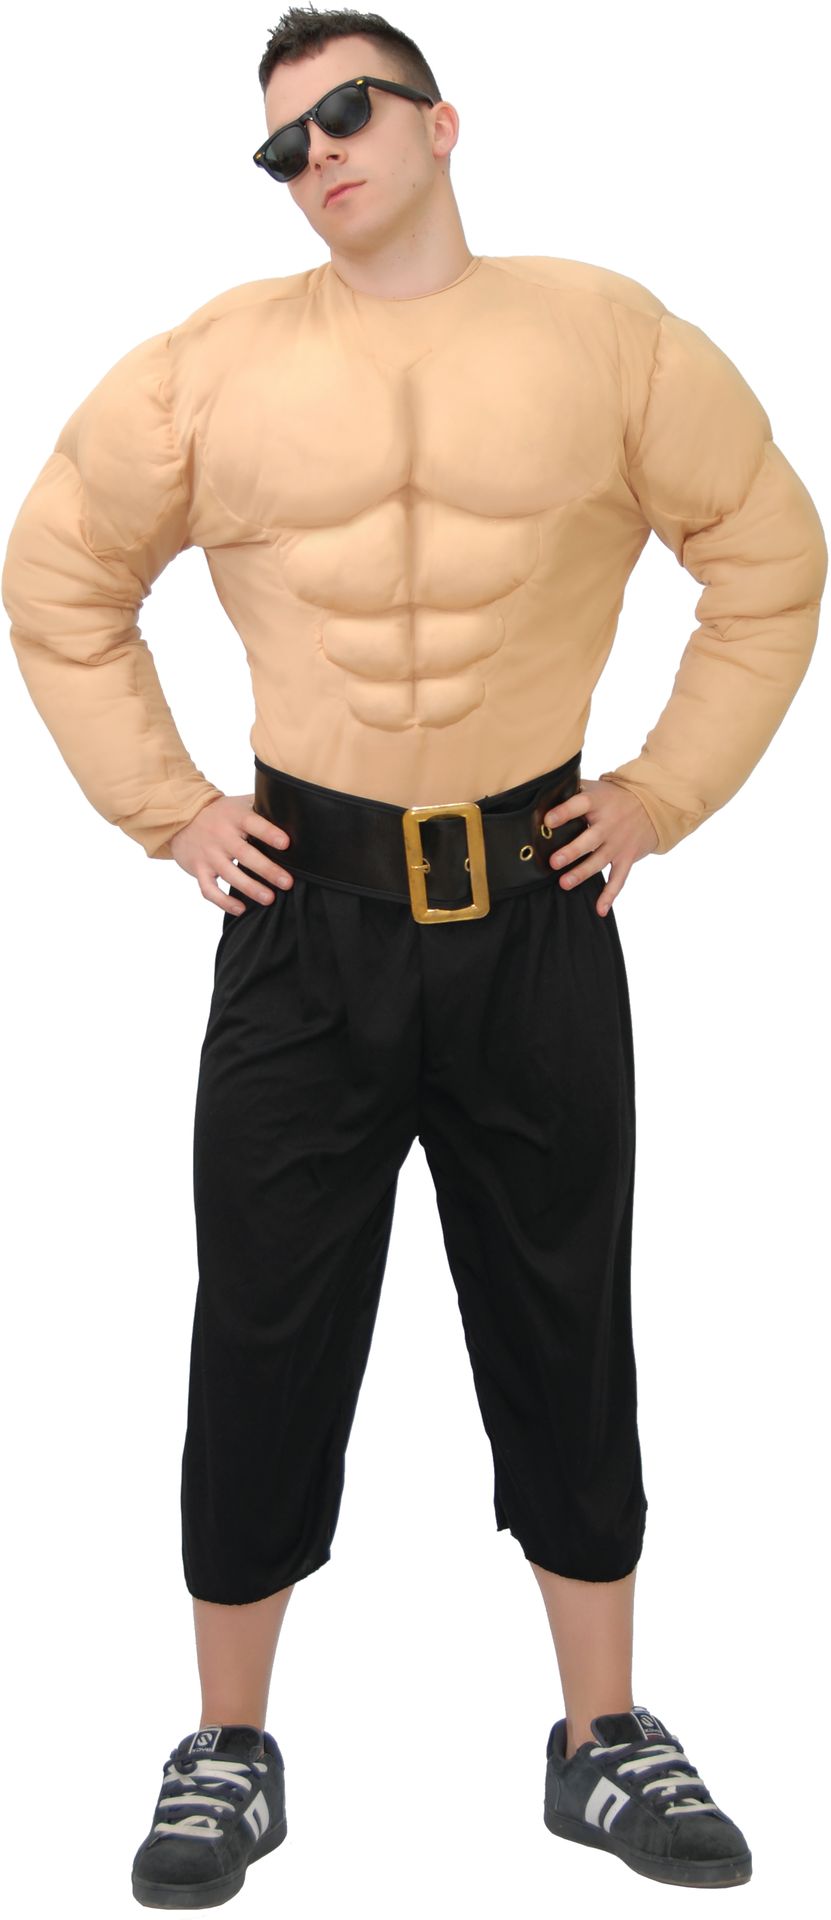 Bodybuilder shirt man